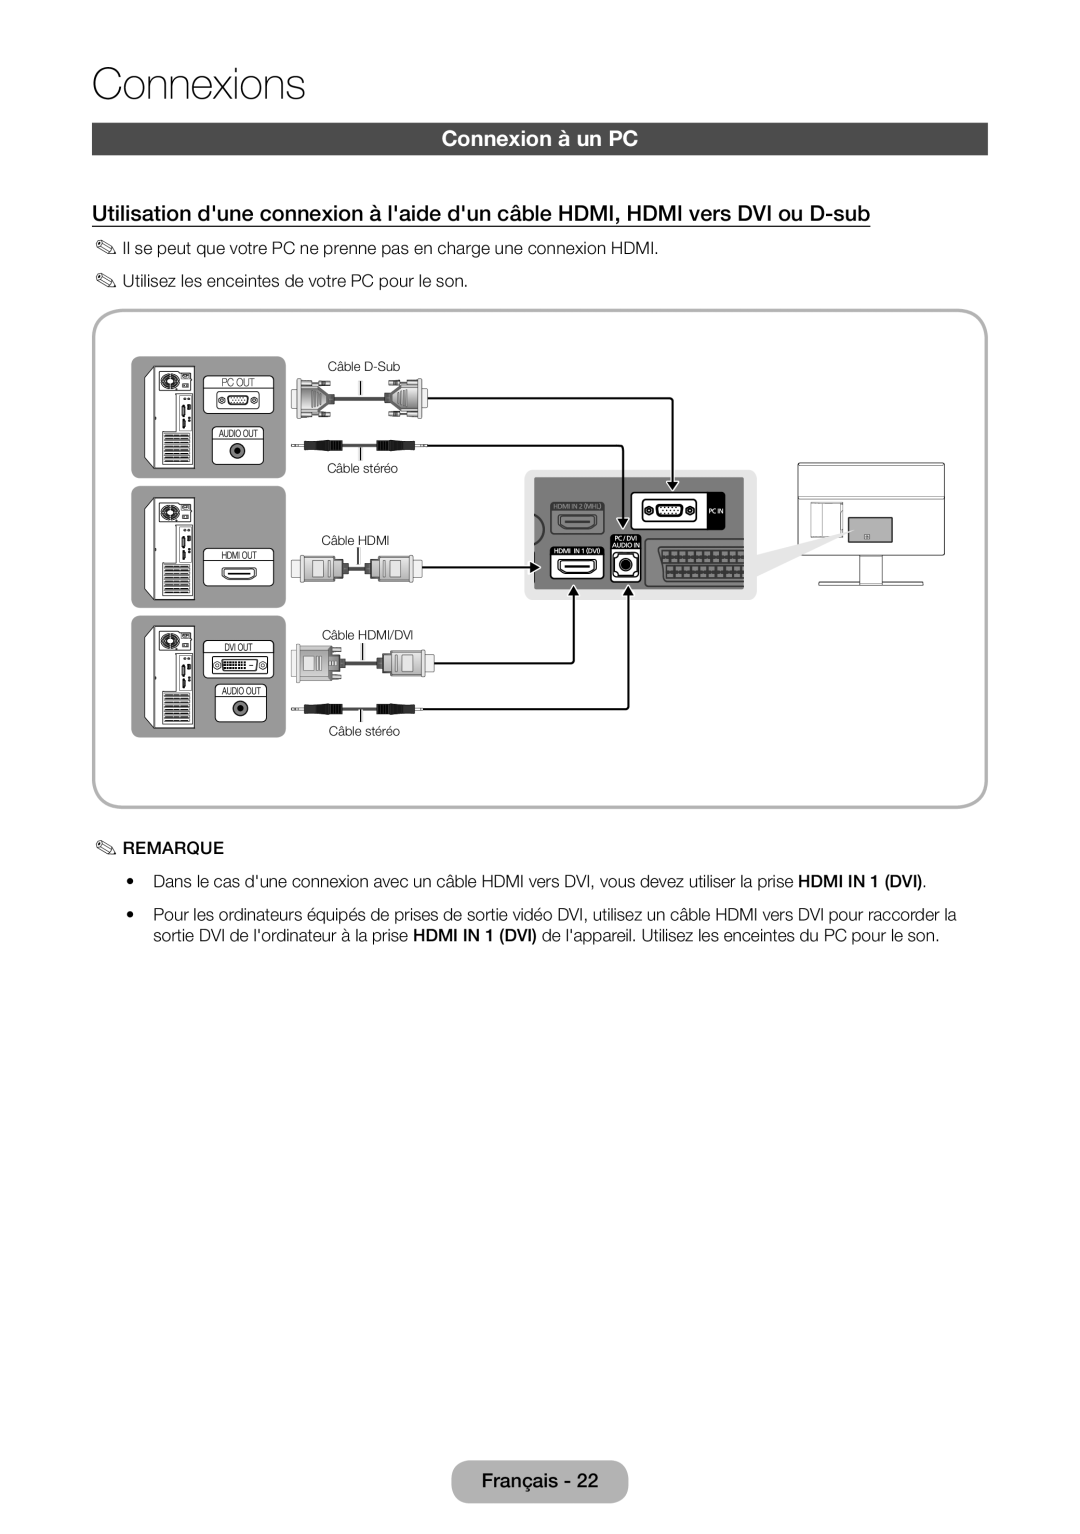 Samsung LT24D391EW/EN manual Connexion à un PC, Connexions, Câble D-Sub Câble stéréo Câble HDMI Câble HDMI/DVI Câble stéréo 